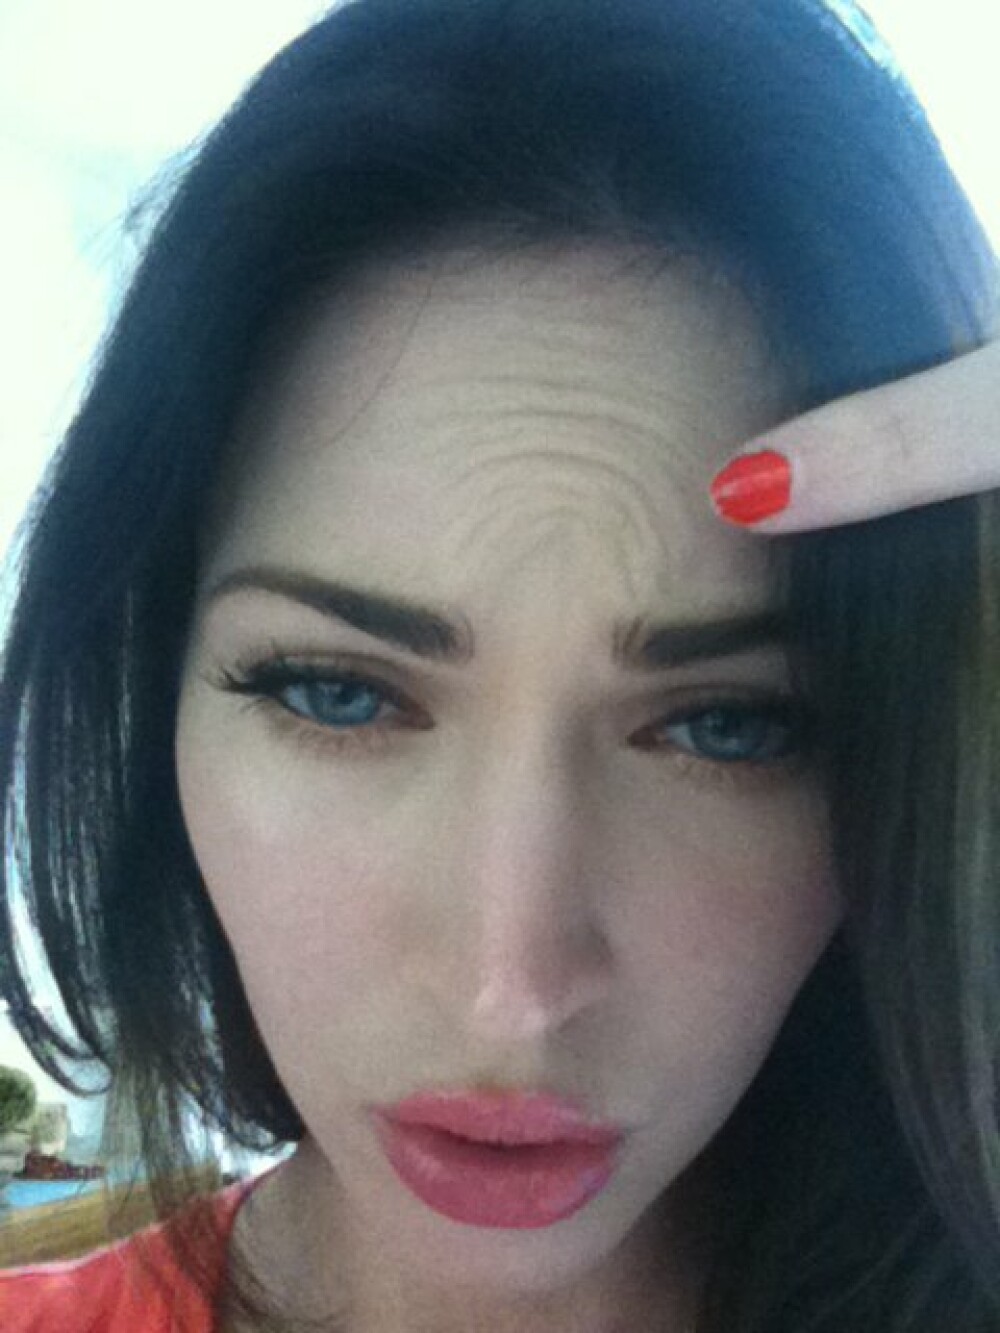 Ce a vrut Megan Fox sa demonstreze cu aceste poze? GALERIE FOTO - Imaginea 2